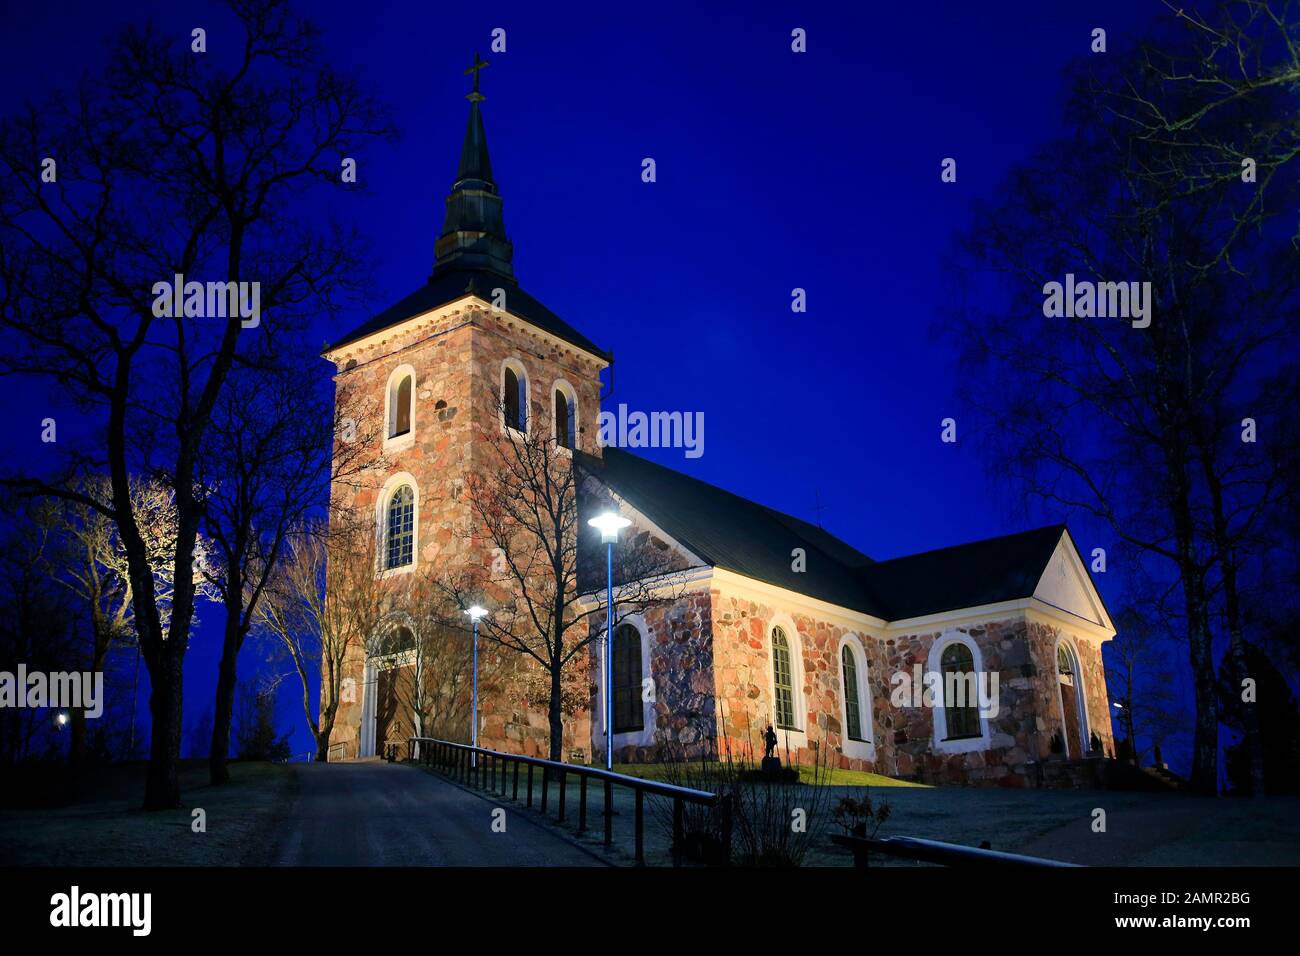 Illuminata Chiesa Uskela, progettata dall'architetto finlandese C. L. Engel e costruita nel 1832, nella notte invernale. Salo, Finlandia. Gennaio 2020. Foto Stock